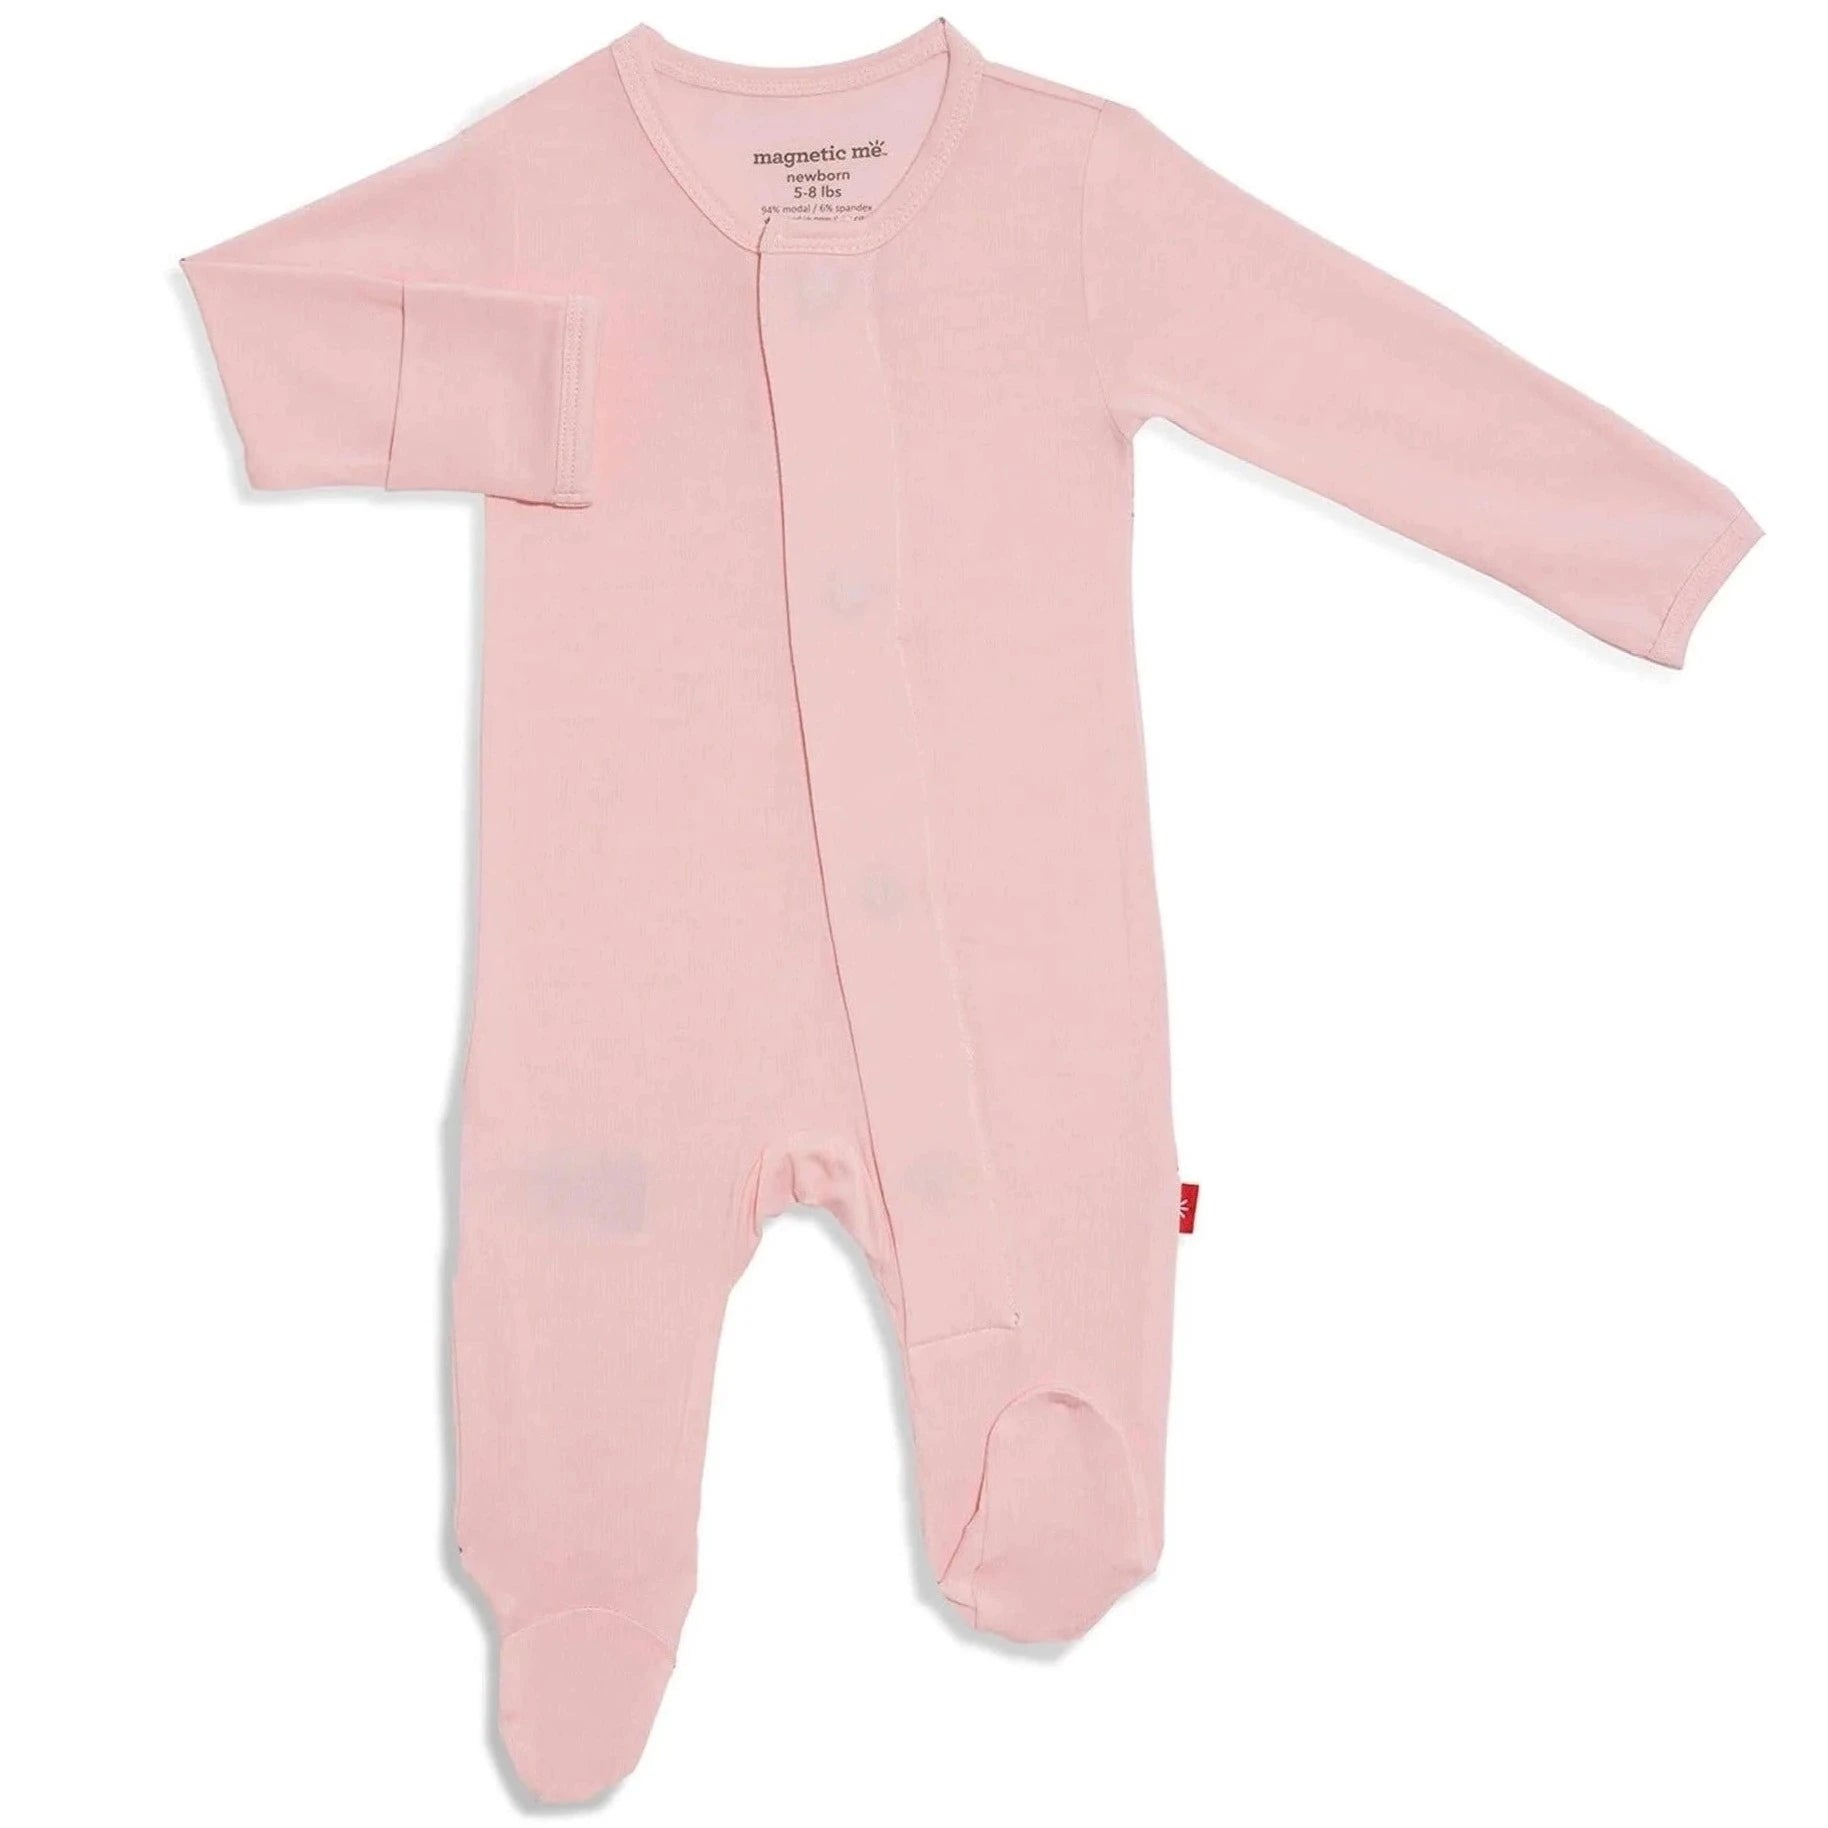 Pink long sleeve baby onesie